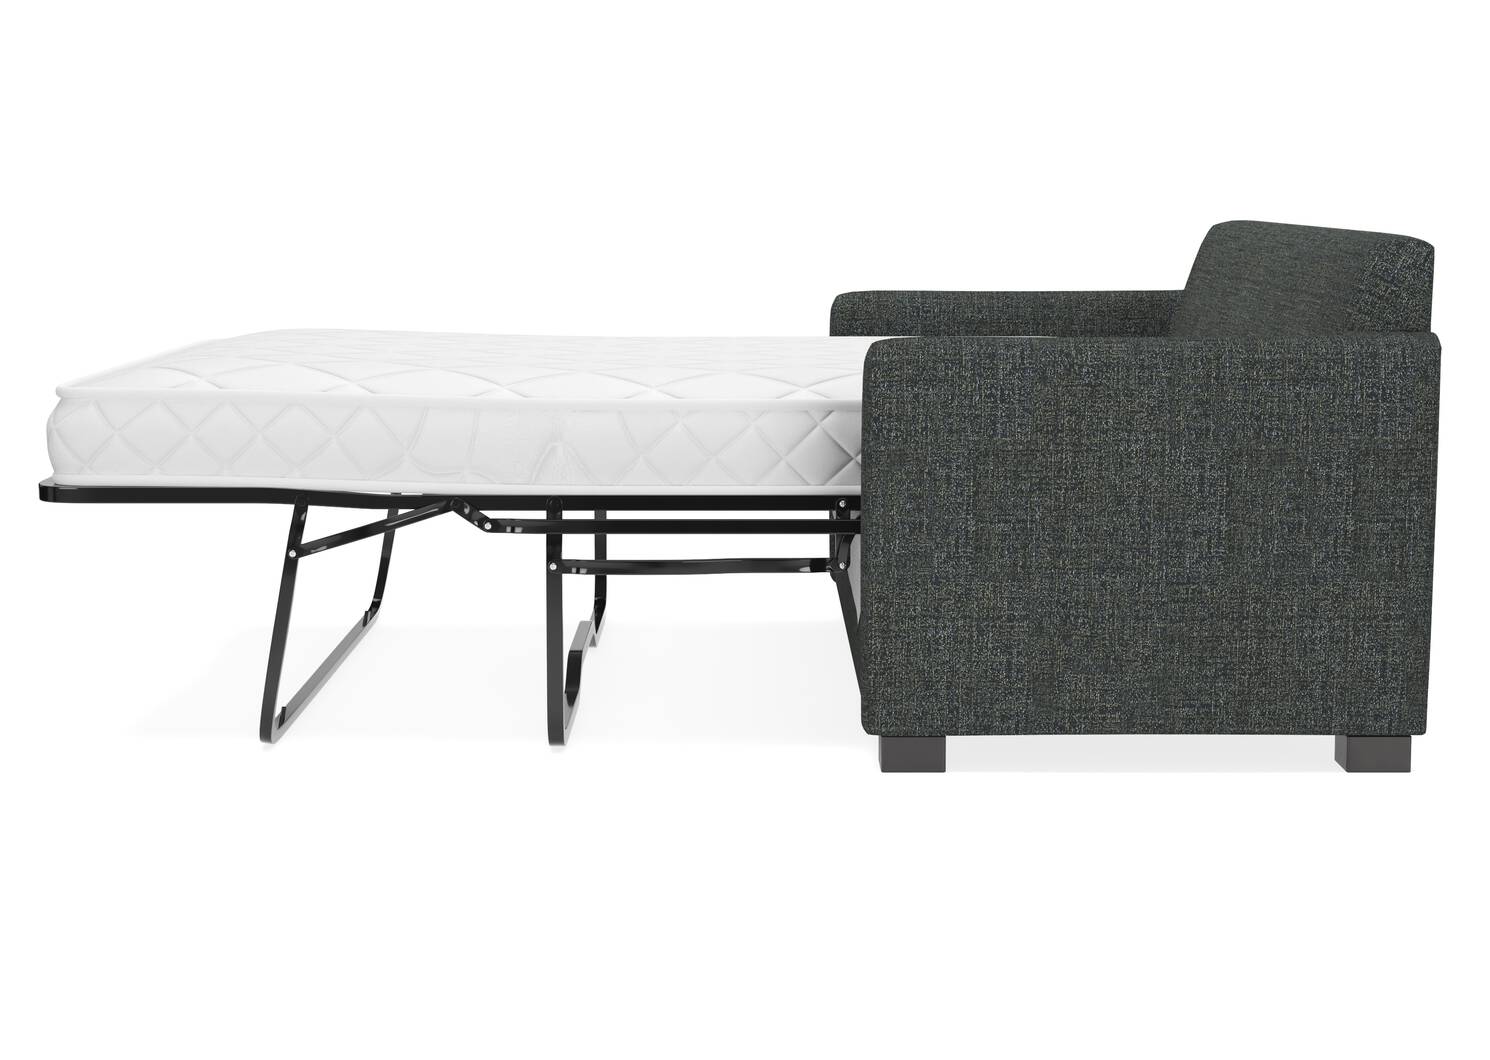 Azure Custom Sofa w/ Queen Bed